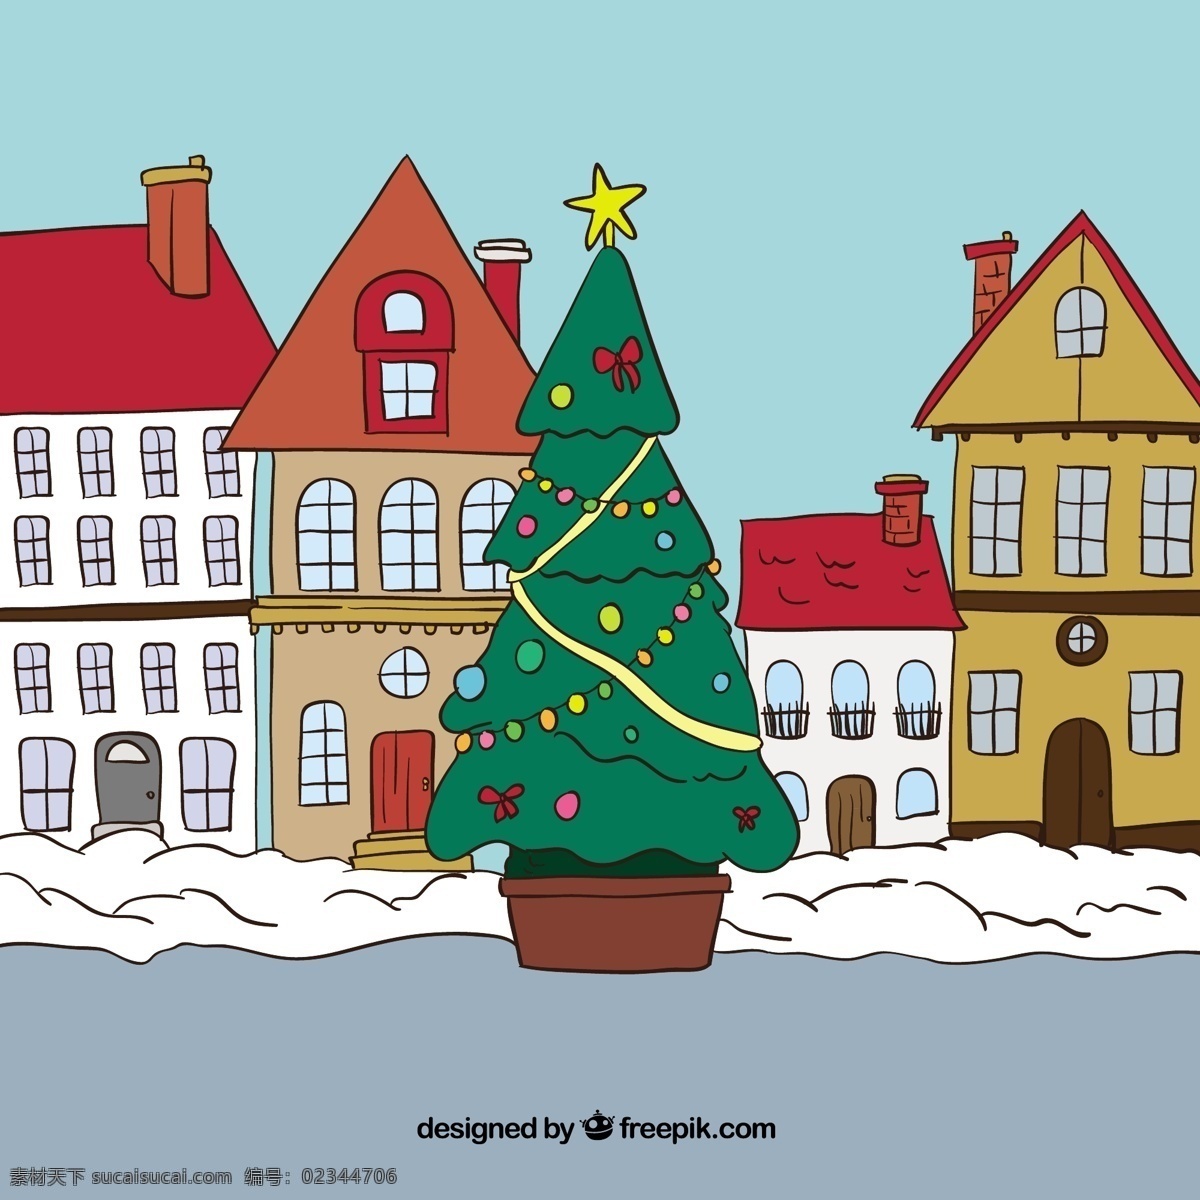 粗略 圣诞 小镇 圣诞节 一方面 建筑 圣诞快乐 冬天 手绘 快乐 庆祝 节日 绘画 城镇 城市 节日快乐 手工绘图 绘制 季节 青色 天蓝色